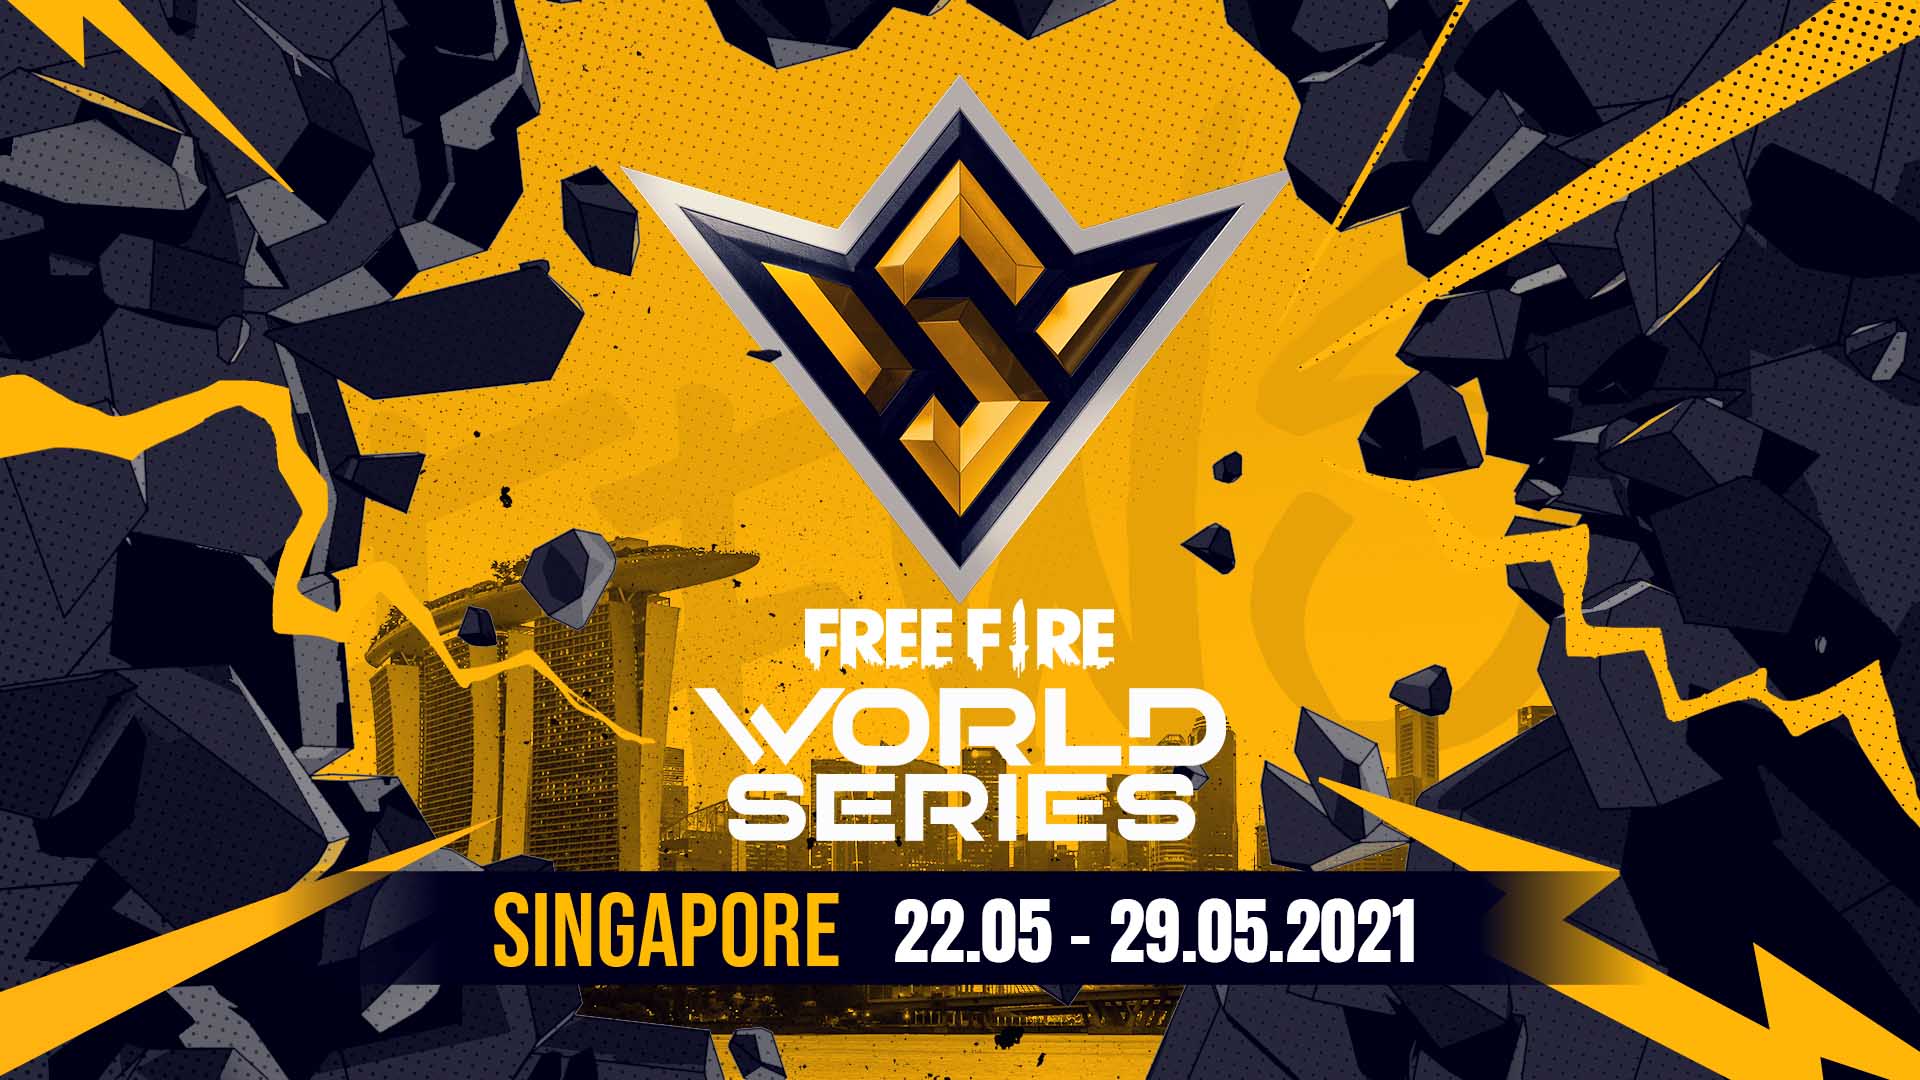 Garena công bố giải Free Fire World Series 2021 Singapore với tổng giải thưởng lên tới 2 triệu đô – giải đấu có giá trị lớn nhất từ trước tới giờ của Free Fire